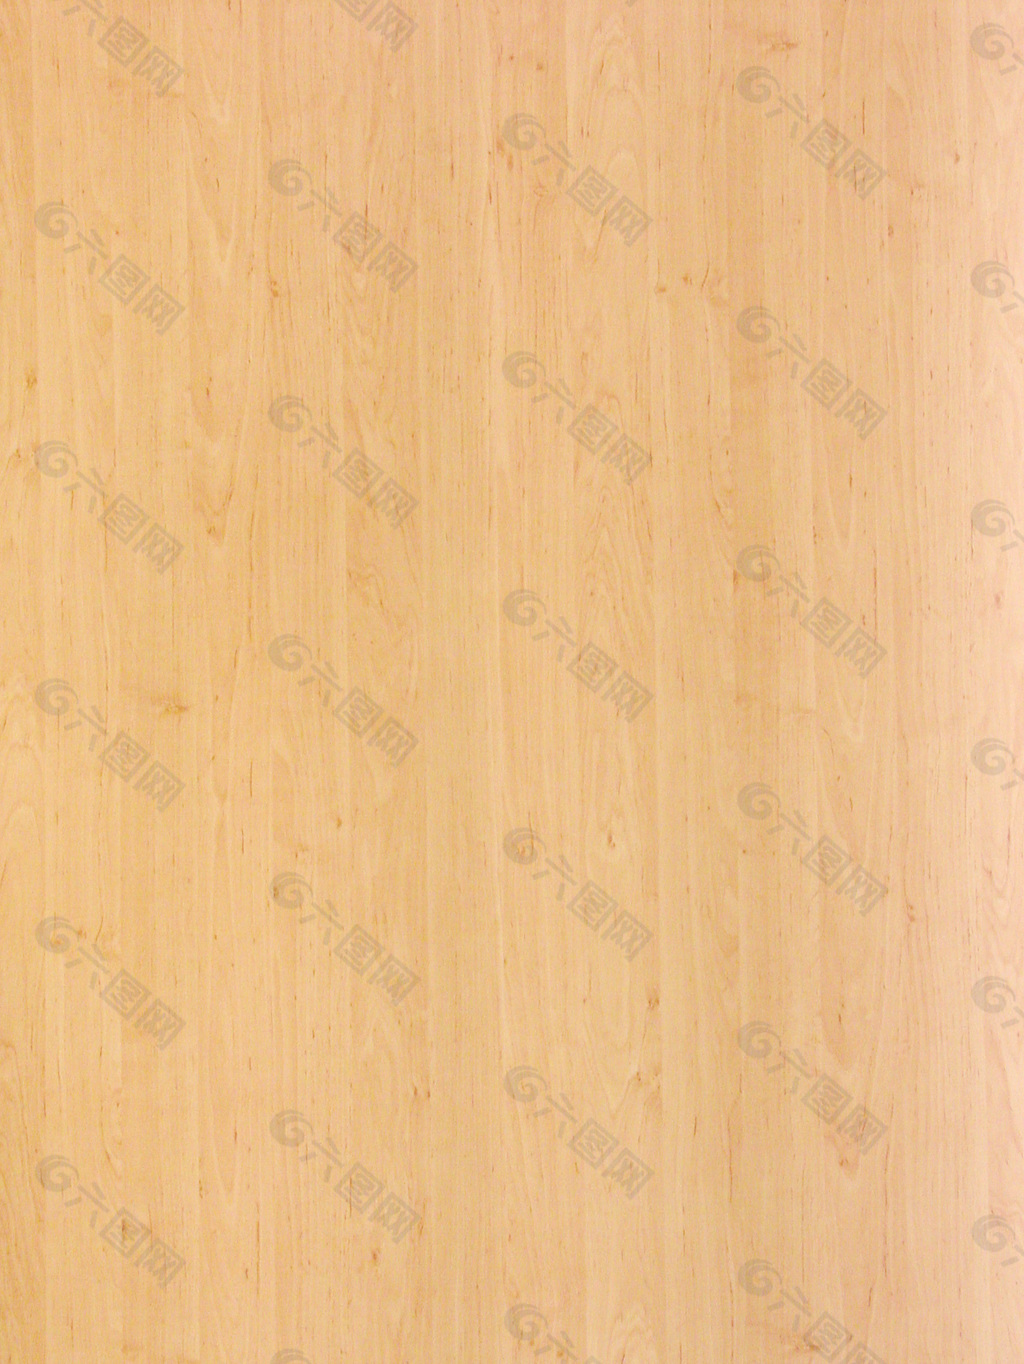 木材木纹木纹素材效果图木材木纹 539